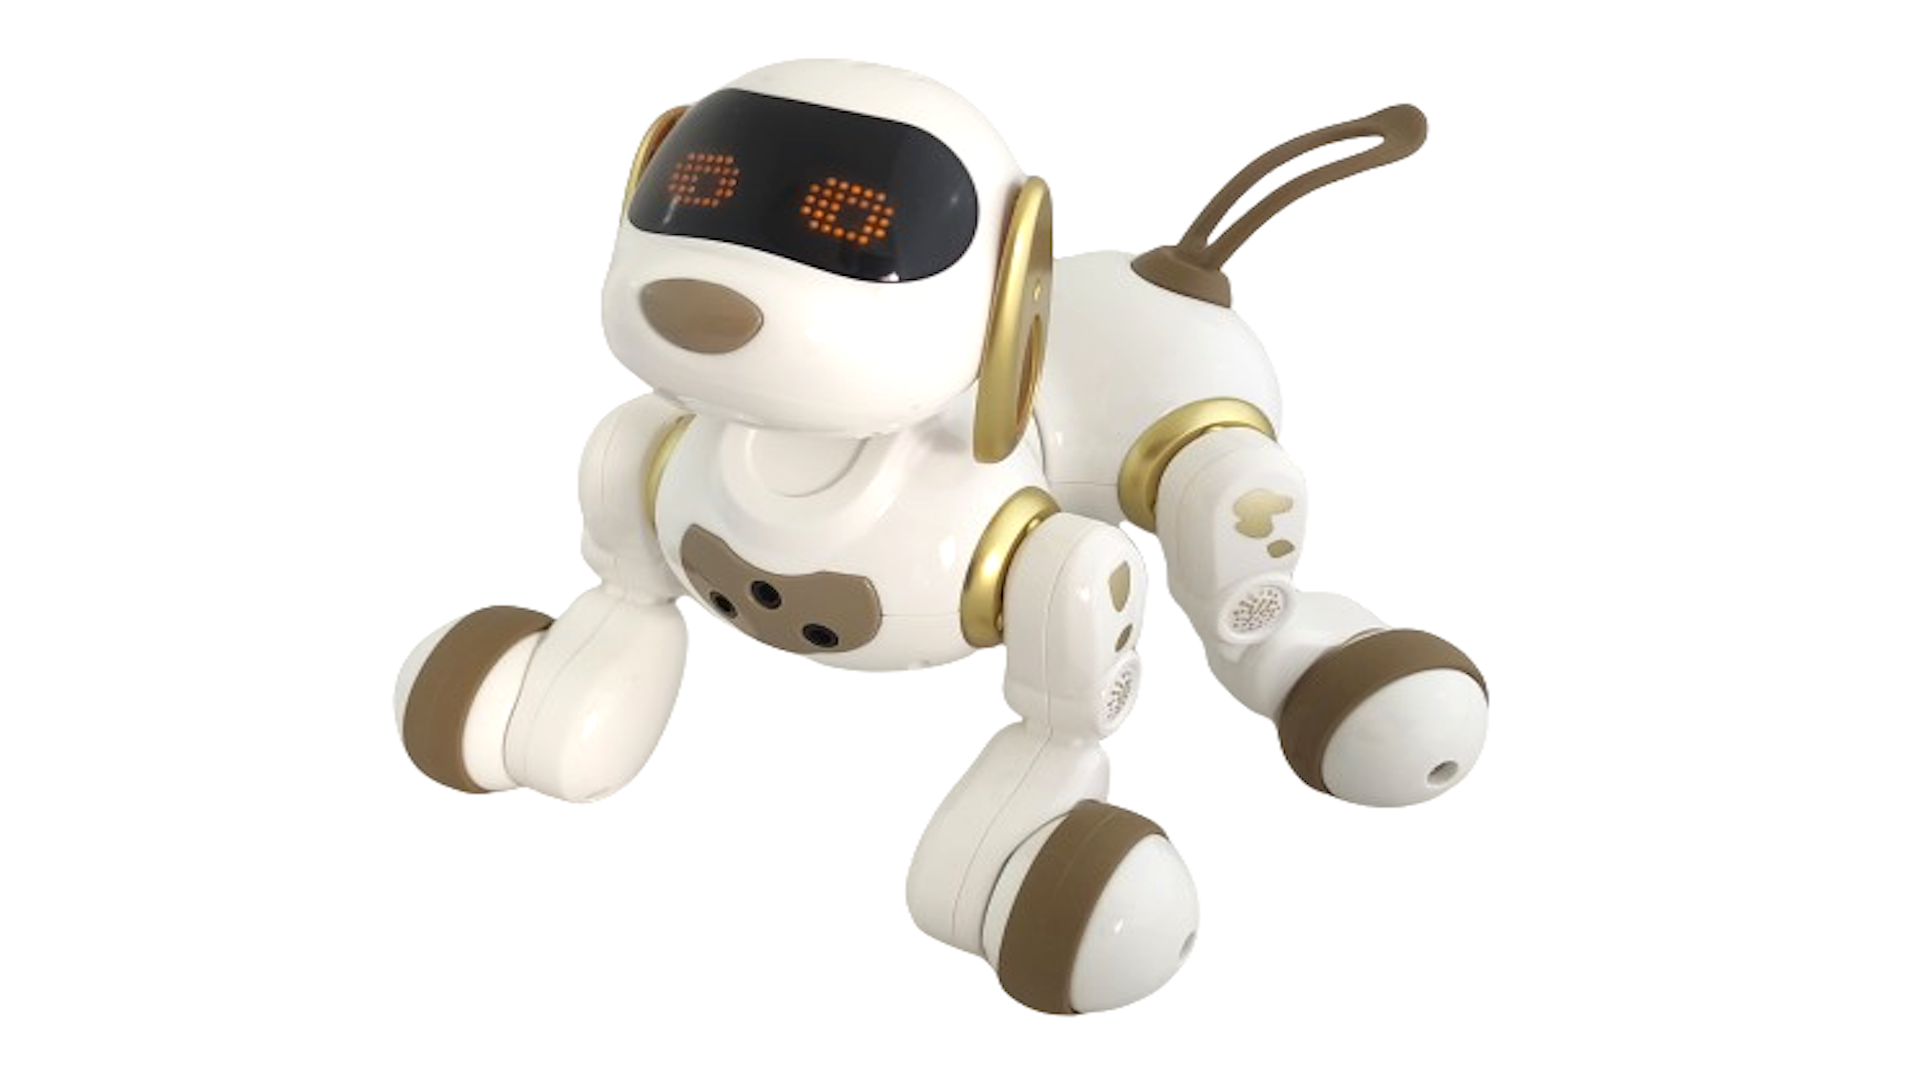 Интерактивная радиоуправляемая собака робот Smart Robot Dog Dexterity AMWELL AW-18011-GOLD le neng toys интерактивная радиоуправляемая собака робот такса